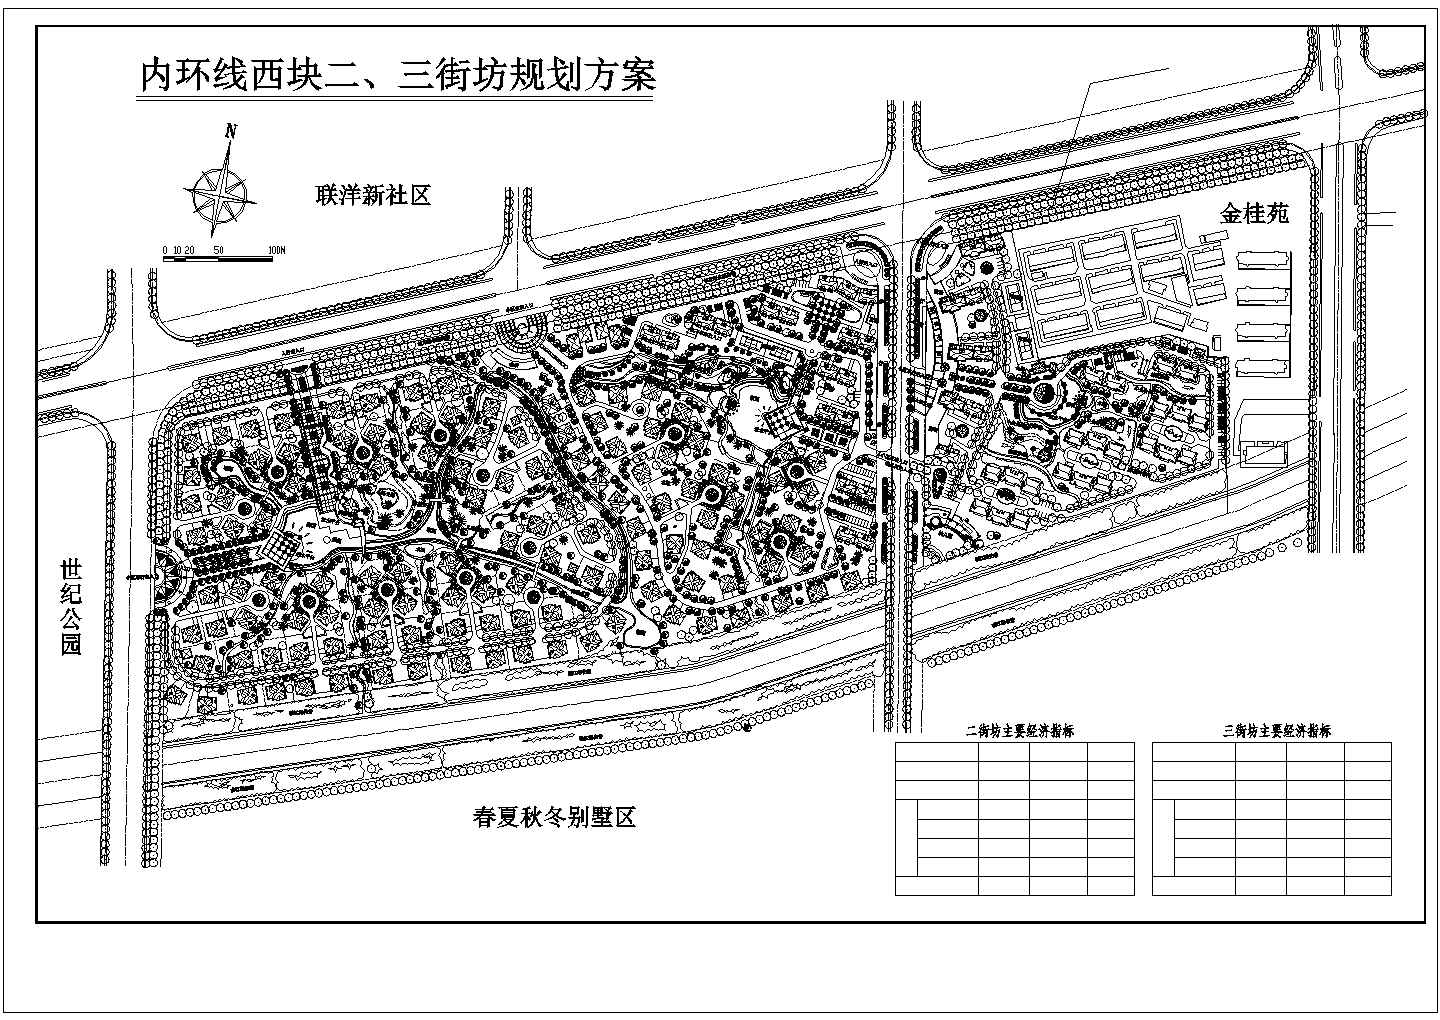 【上海】高档别墅区景观规划设计图纸